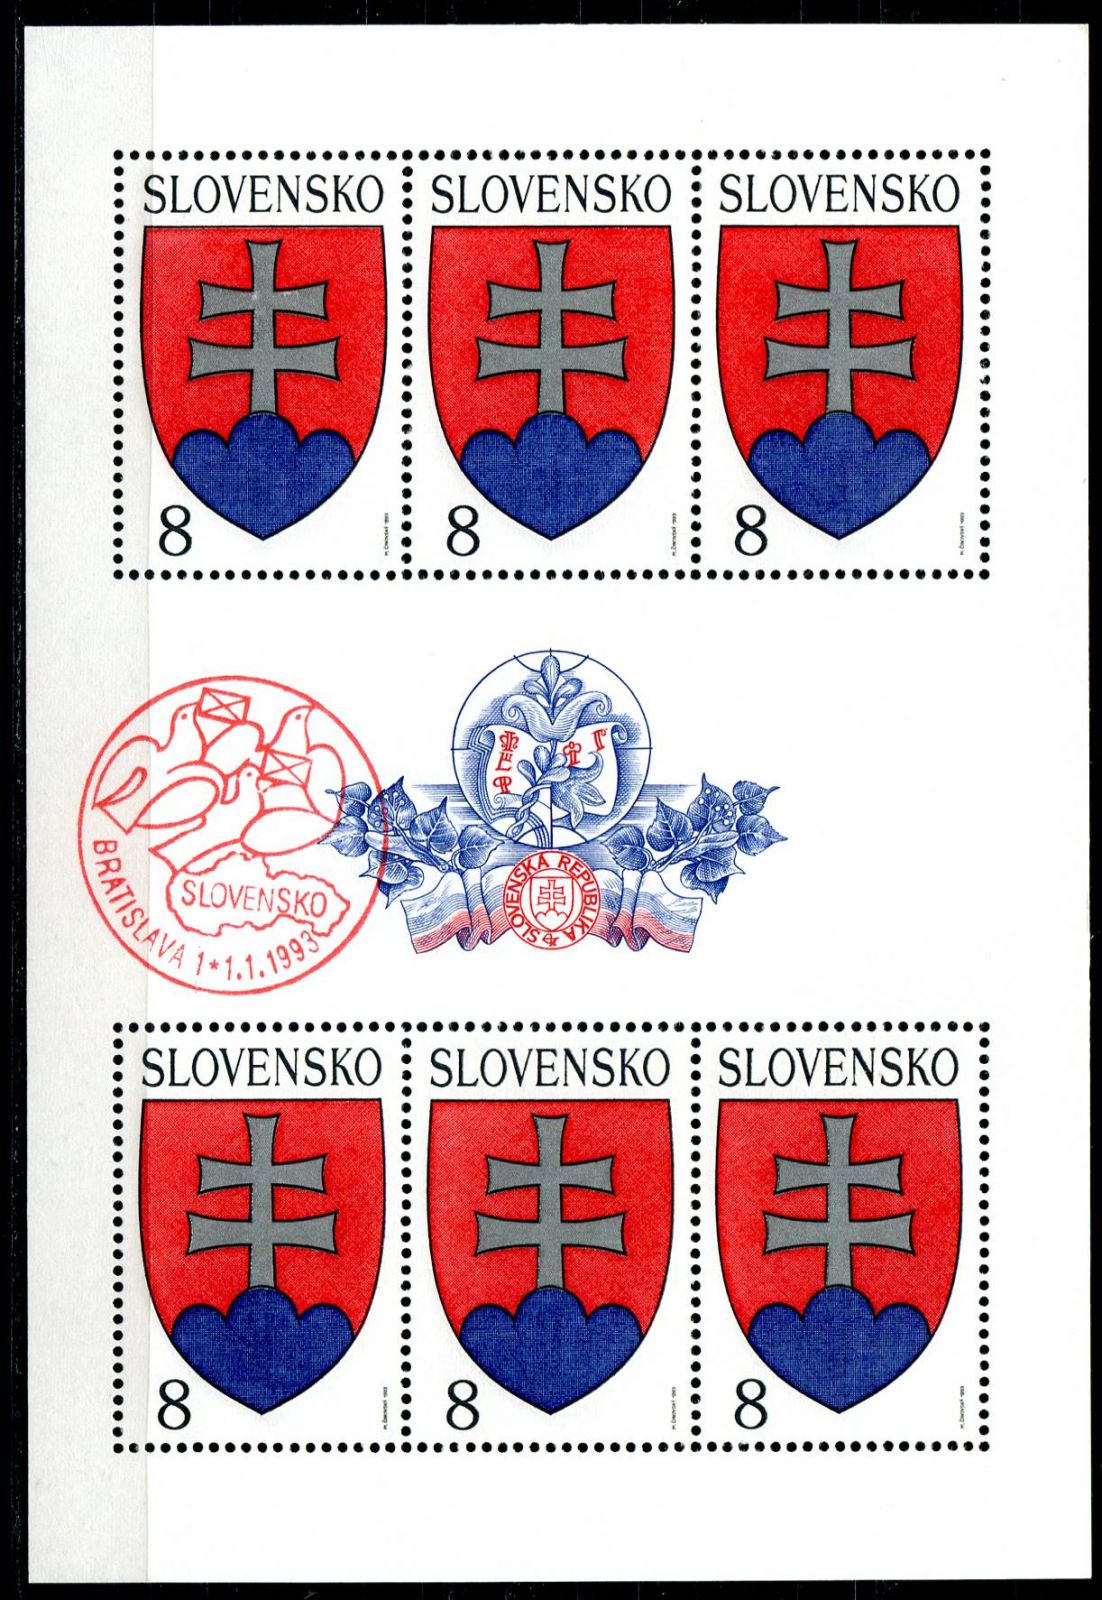 (1993) č. PL 1 ** + PR 1.1.1993 - Slovensko - Velký státní znak | www.tgw.cz